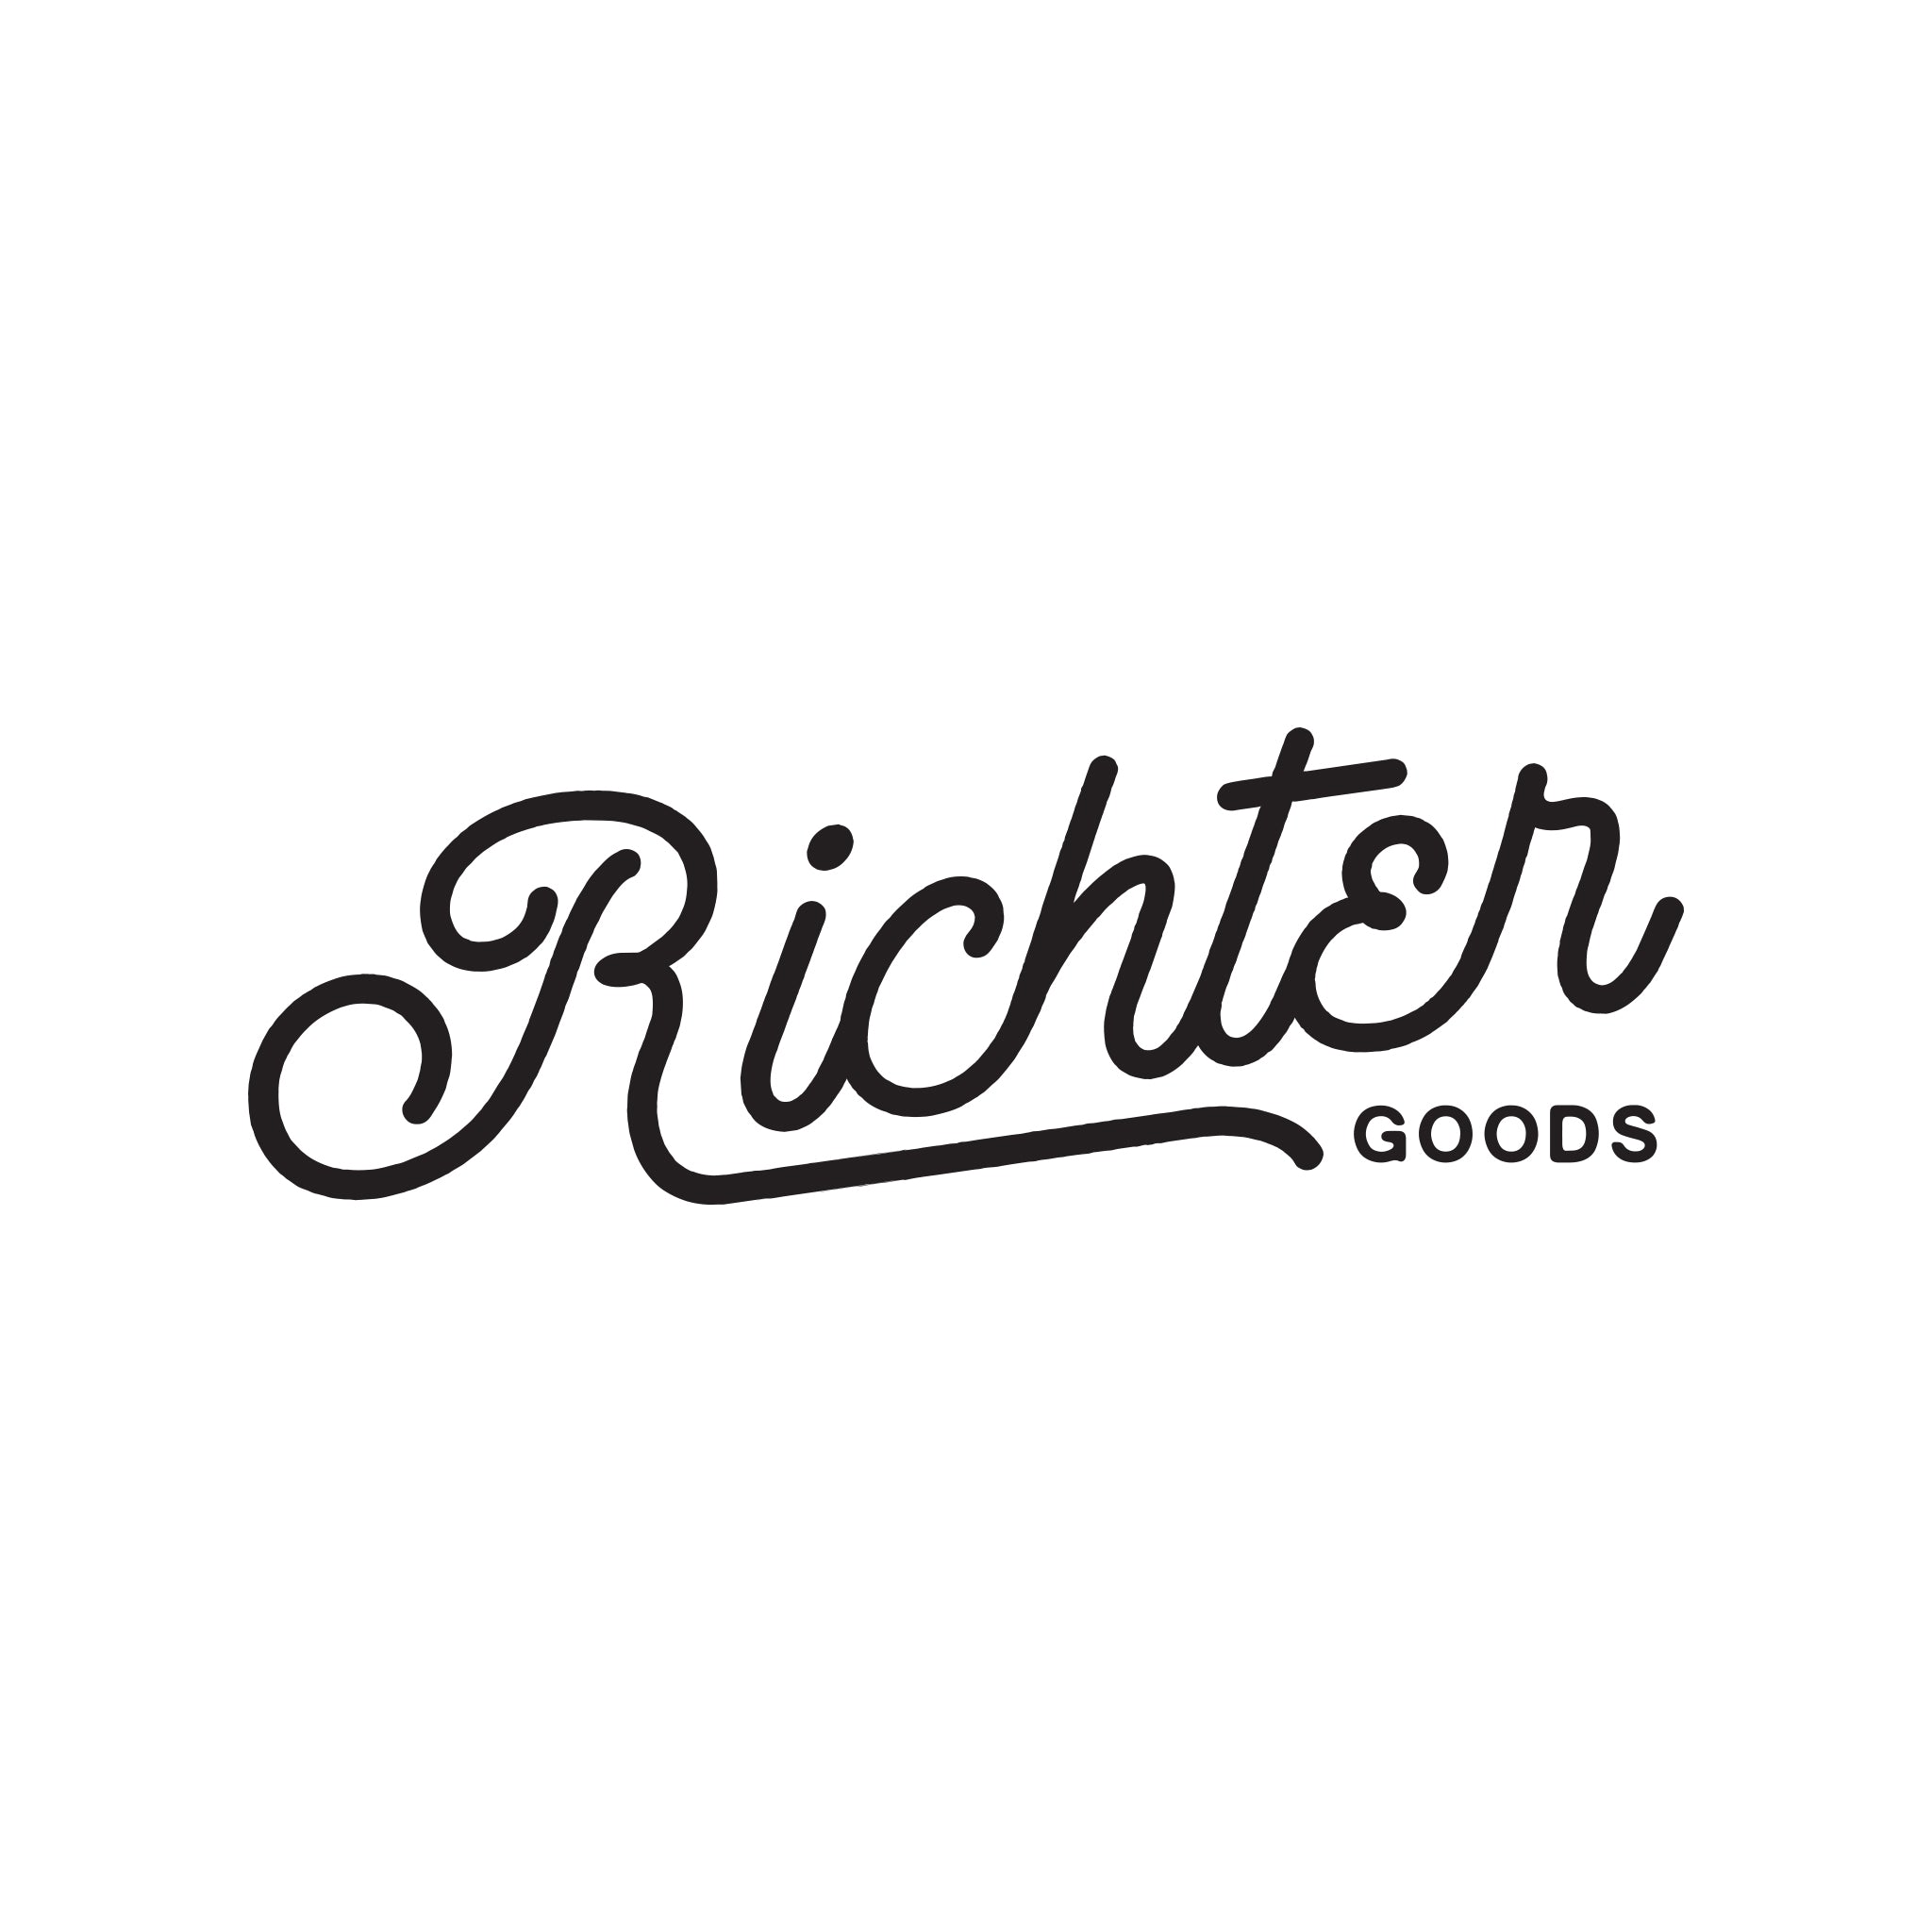 Richter Goods